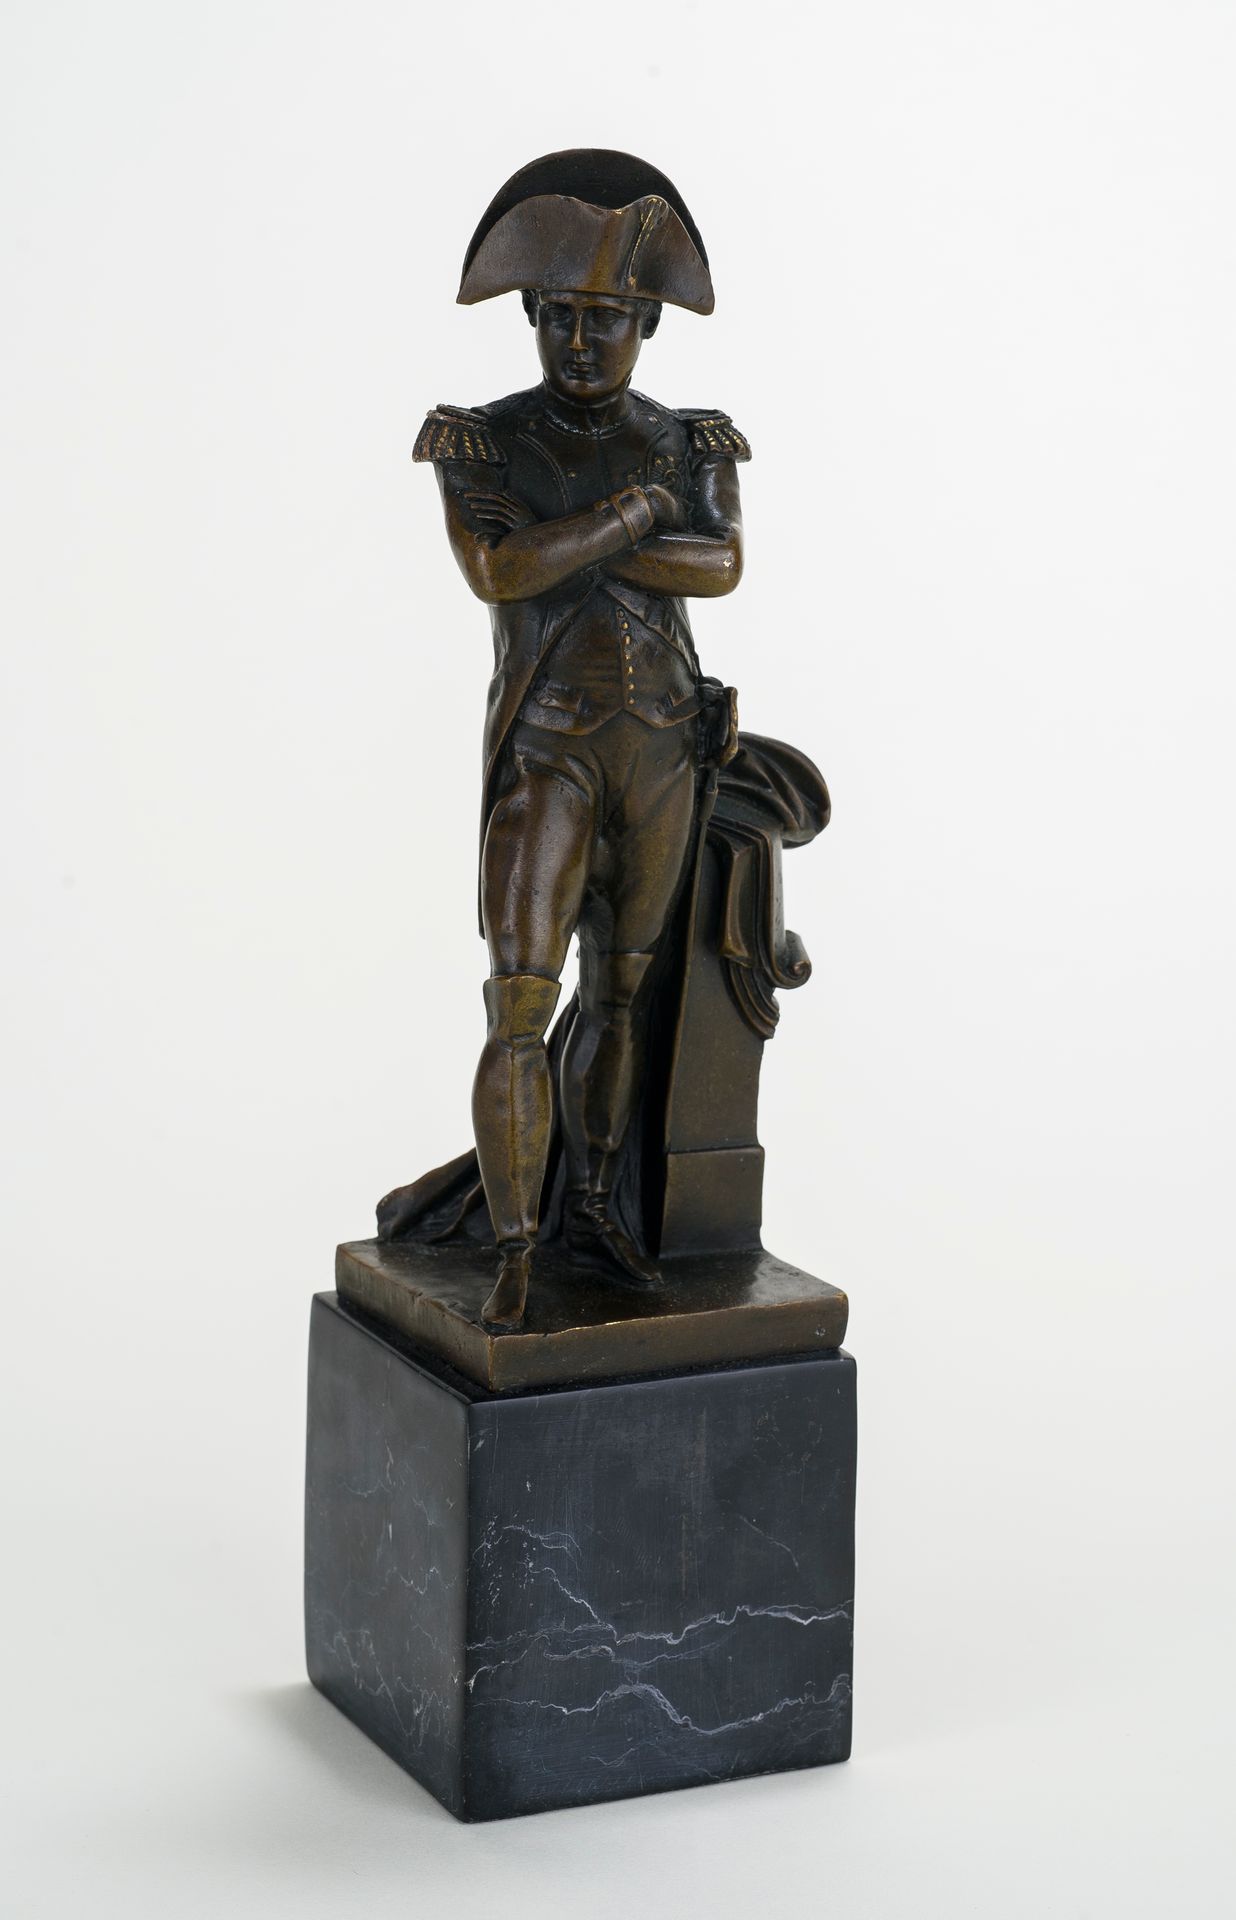 Null 仿照埃米尔-科利奥兰-希波利特-吉耶曼（1841-1907）的作品

拿破仑的雕像

带有棕色铜锈的青铜器

黑色大理石底座

高度：31厘米